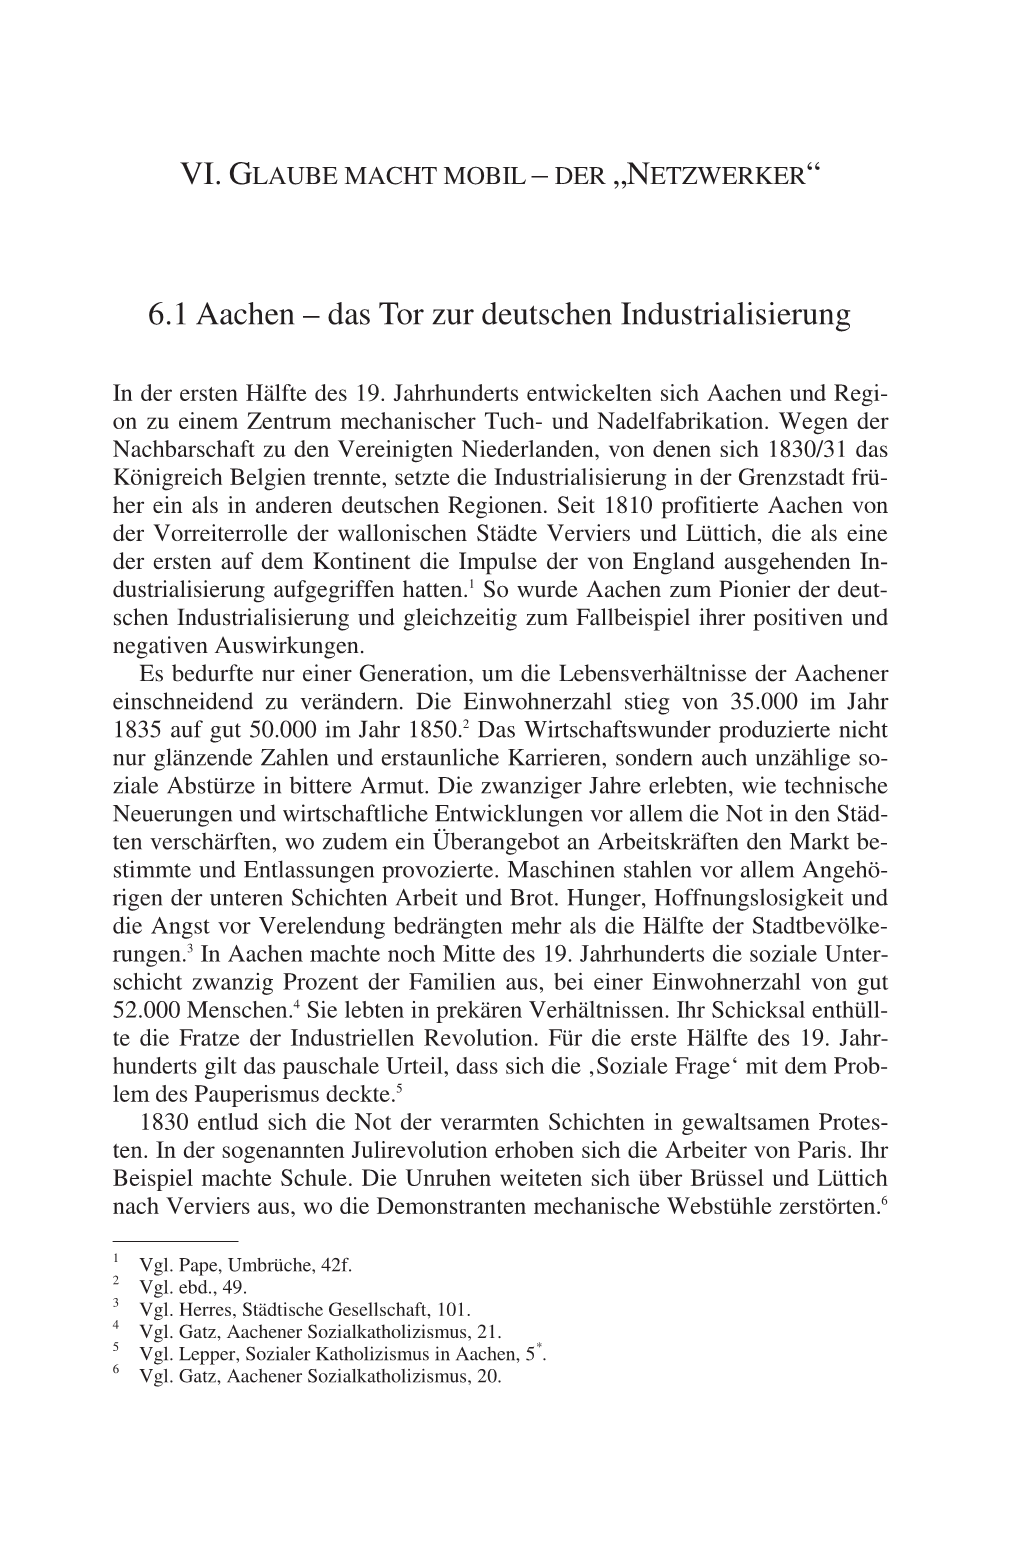 6.1 Aachen – Das Tor Zur Deutschen Industrialisierung